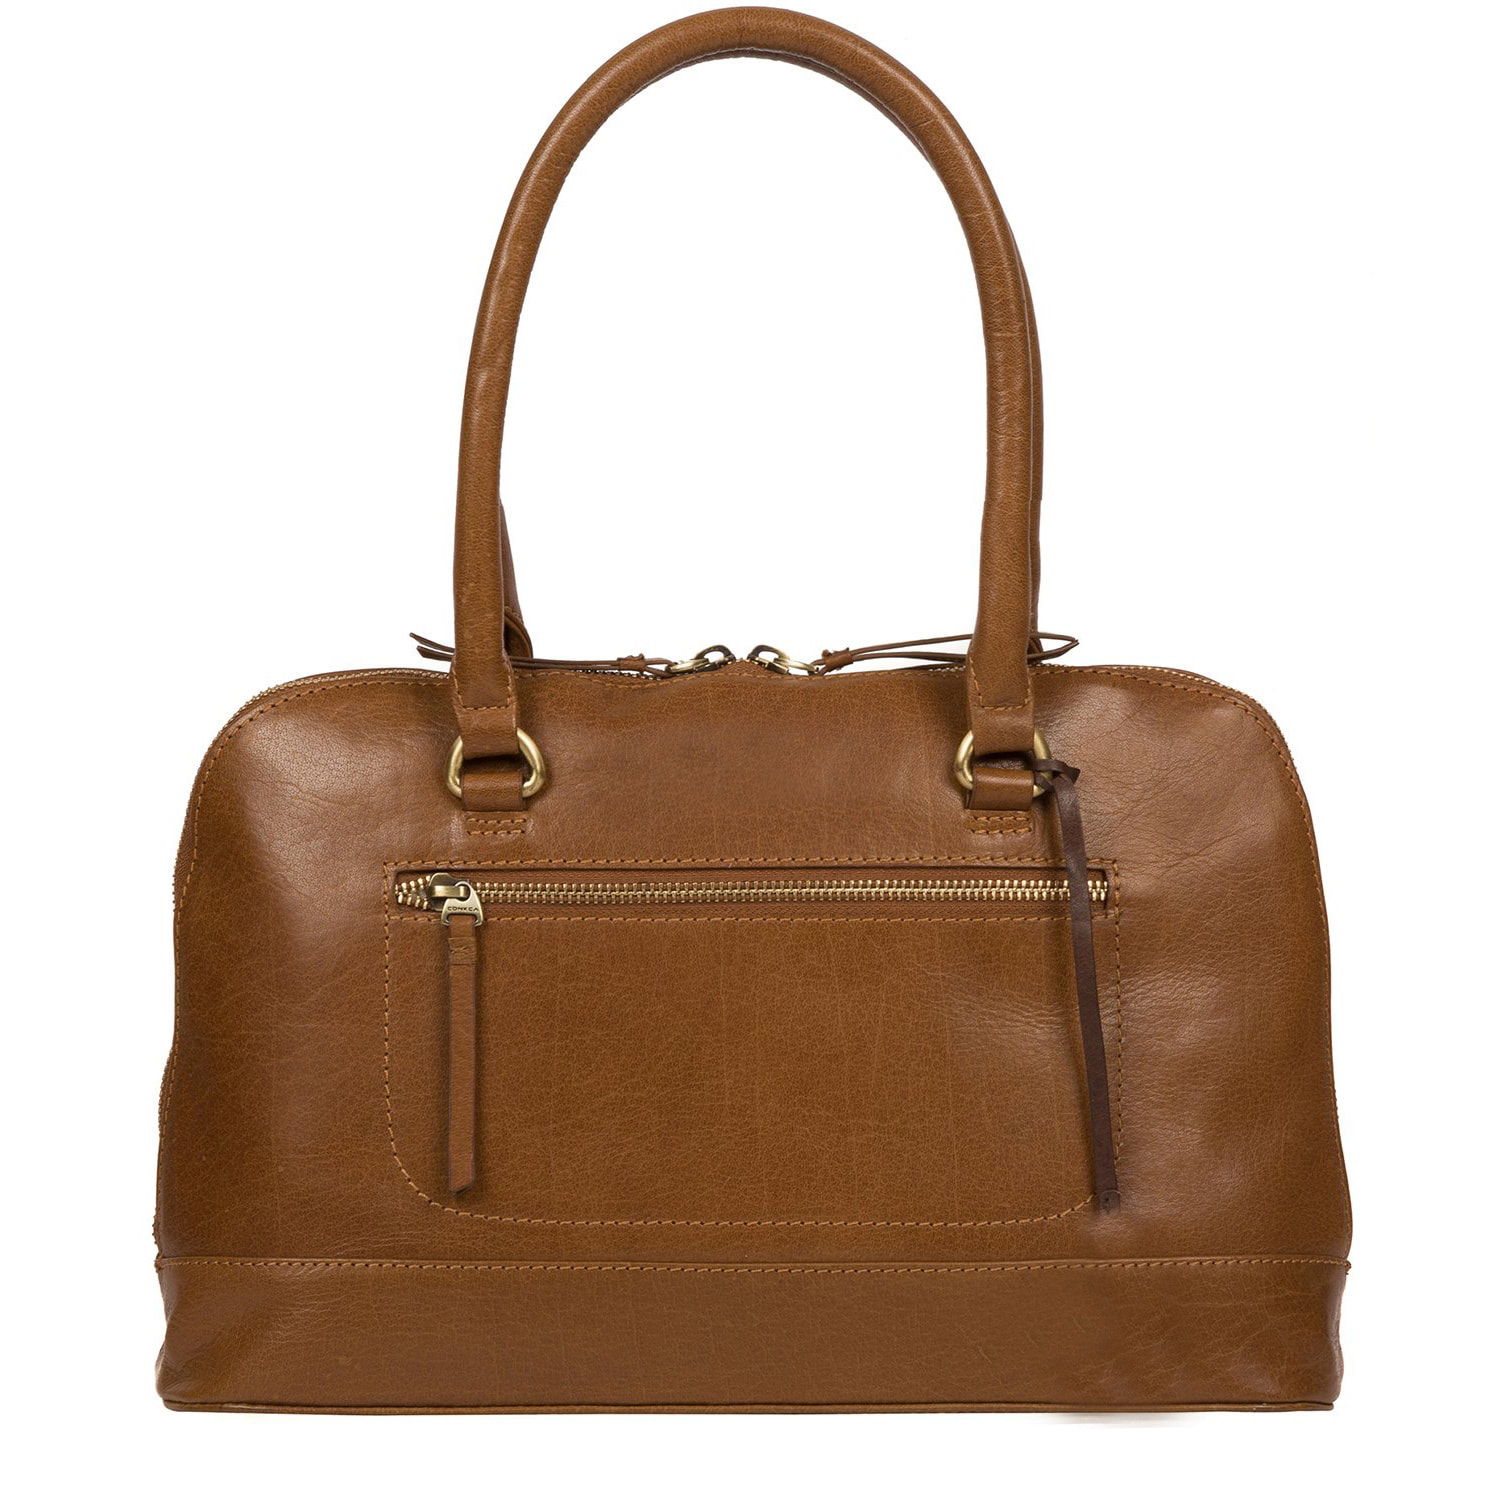 Tan Leather Handbag, Tote Bag